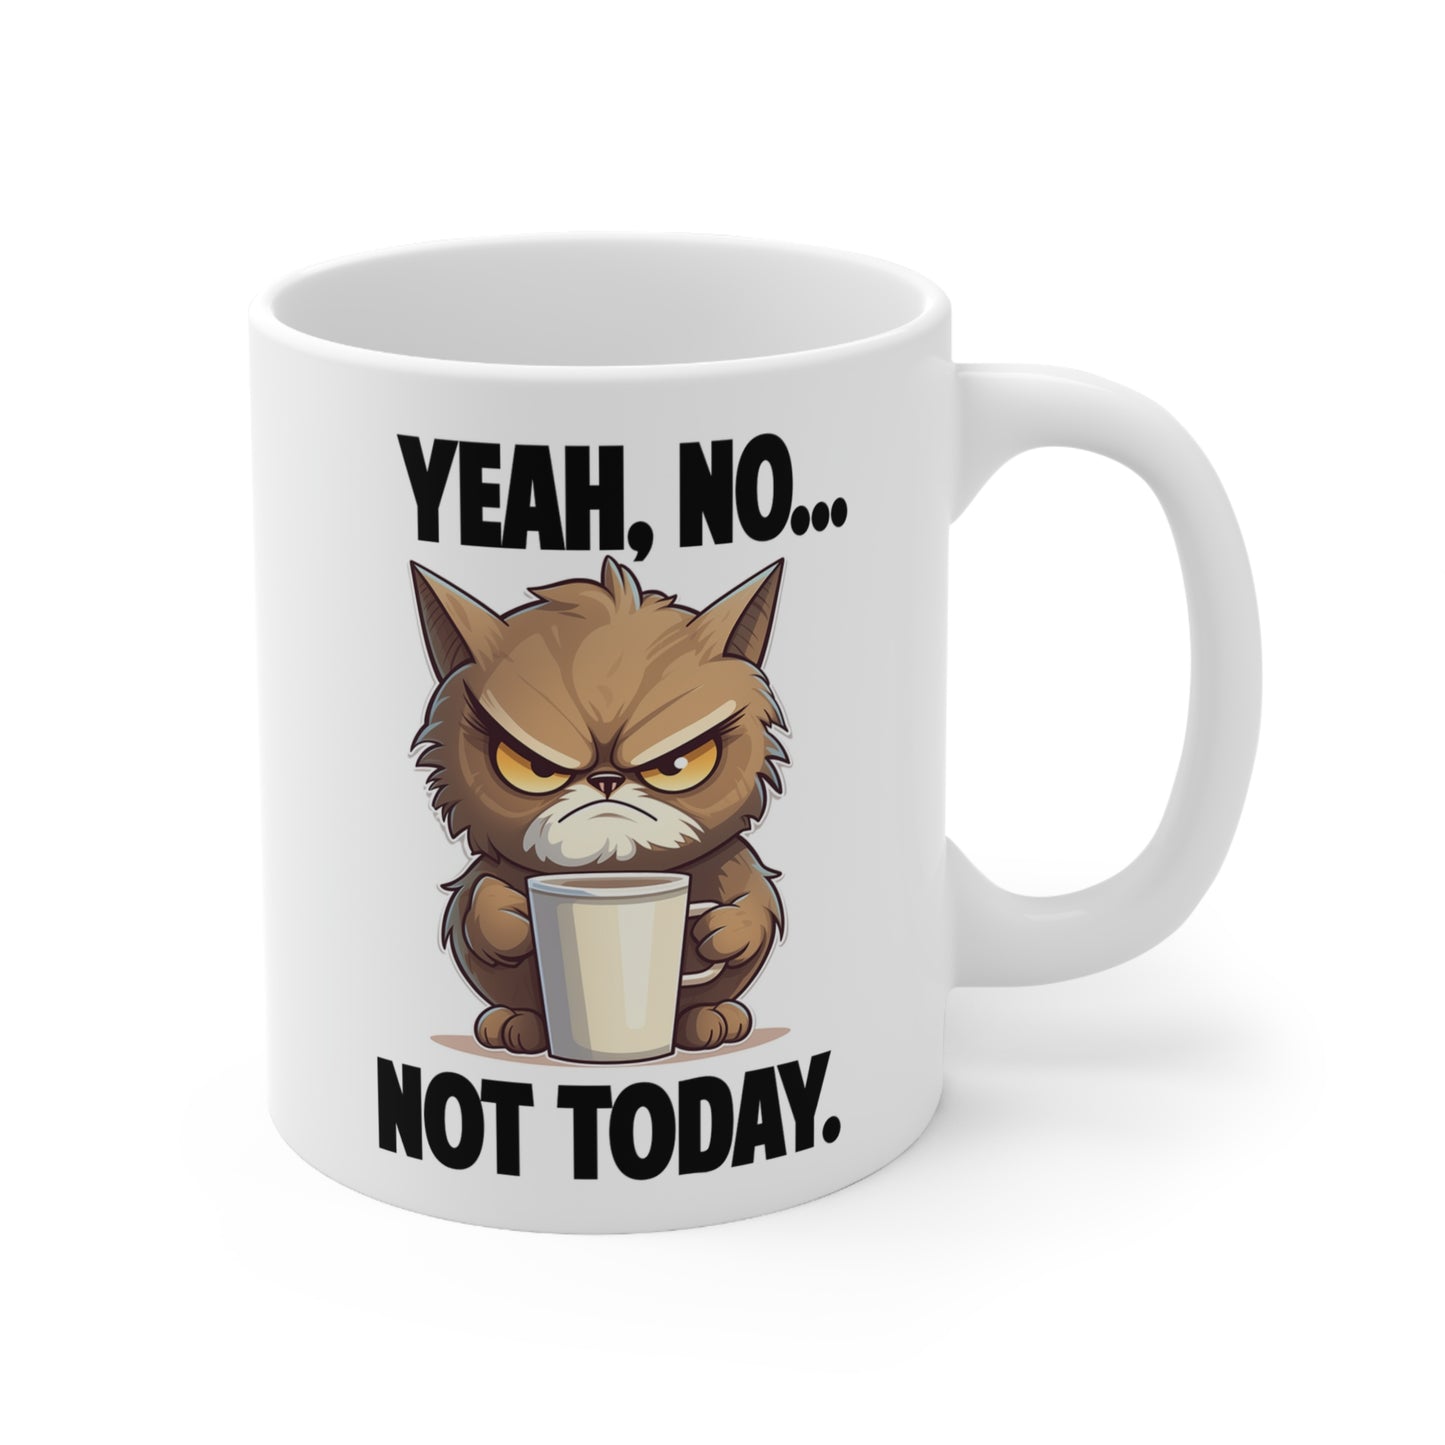 Yeah...No, Not Today. The Kranky Cat Mug.